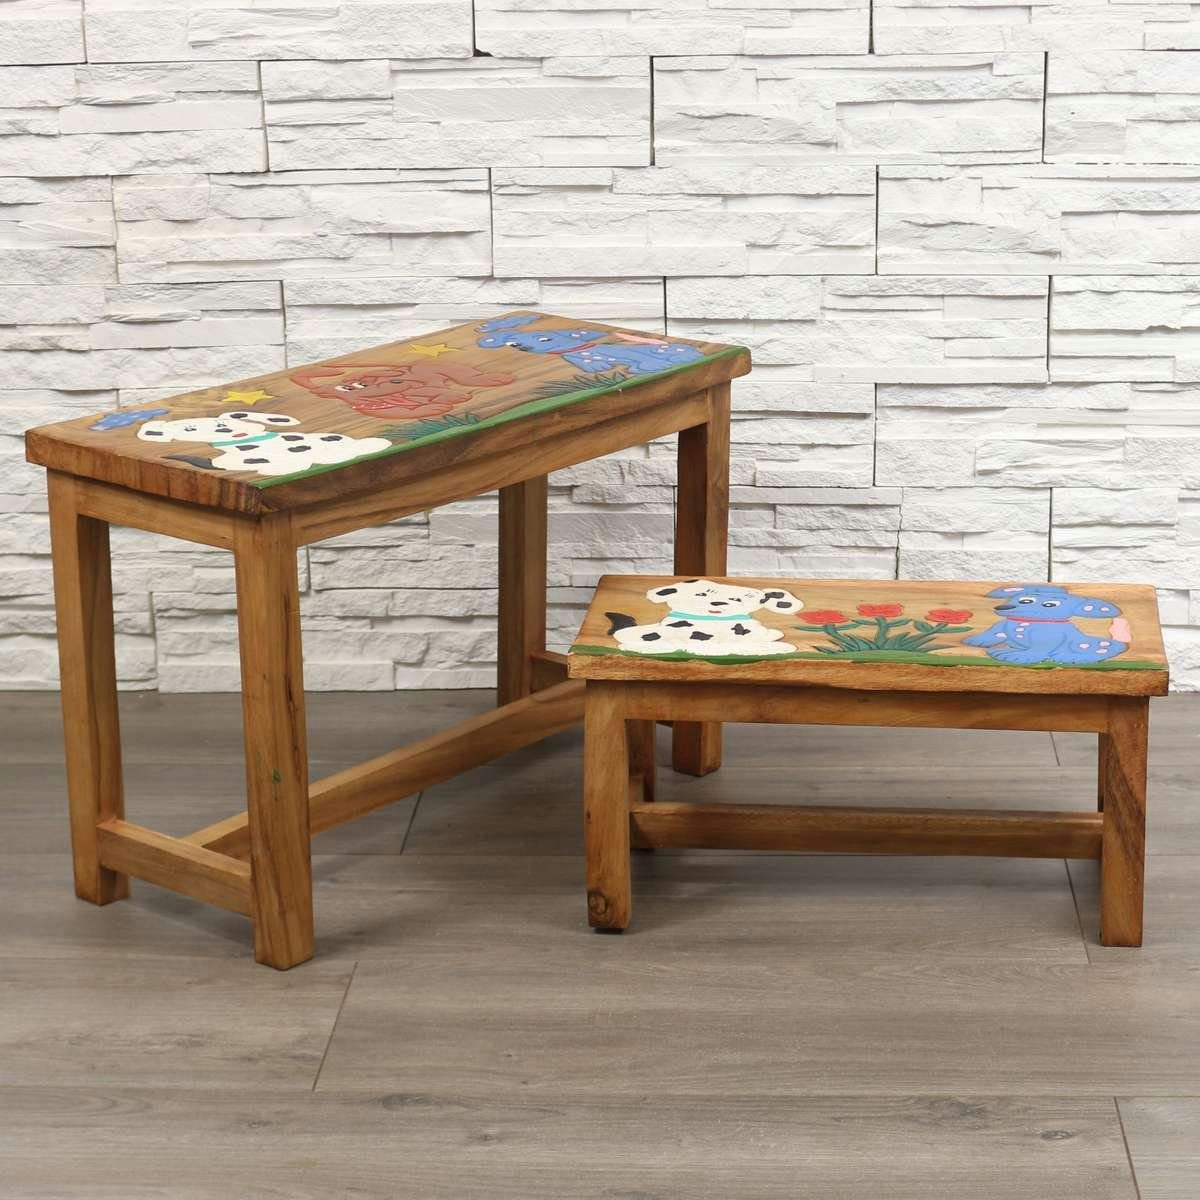 Set traditionelle Hund, Kindermöbel Tisch Ursprungsland Oriental im Herstellung mit Handarbeit in Kindersitzgruppe Galerie Bank